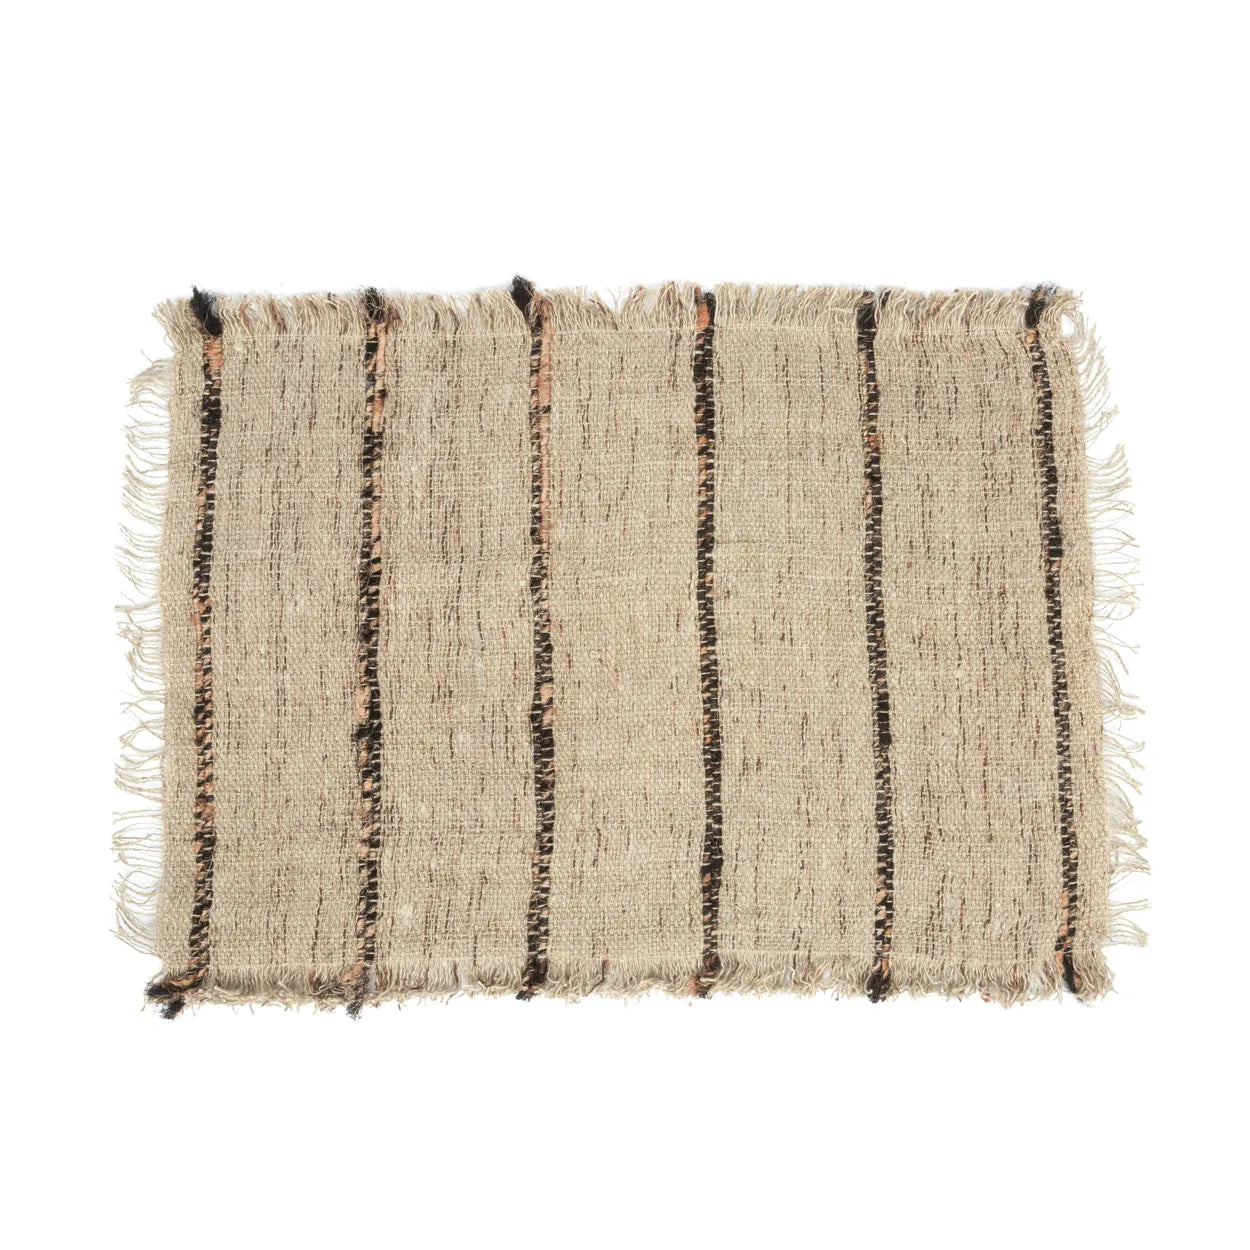 Cazorla SilkWaffle Placemat - Cotton Texture Mat